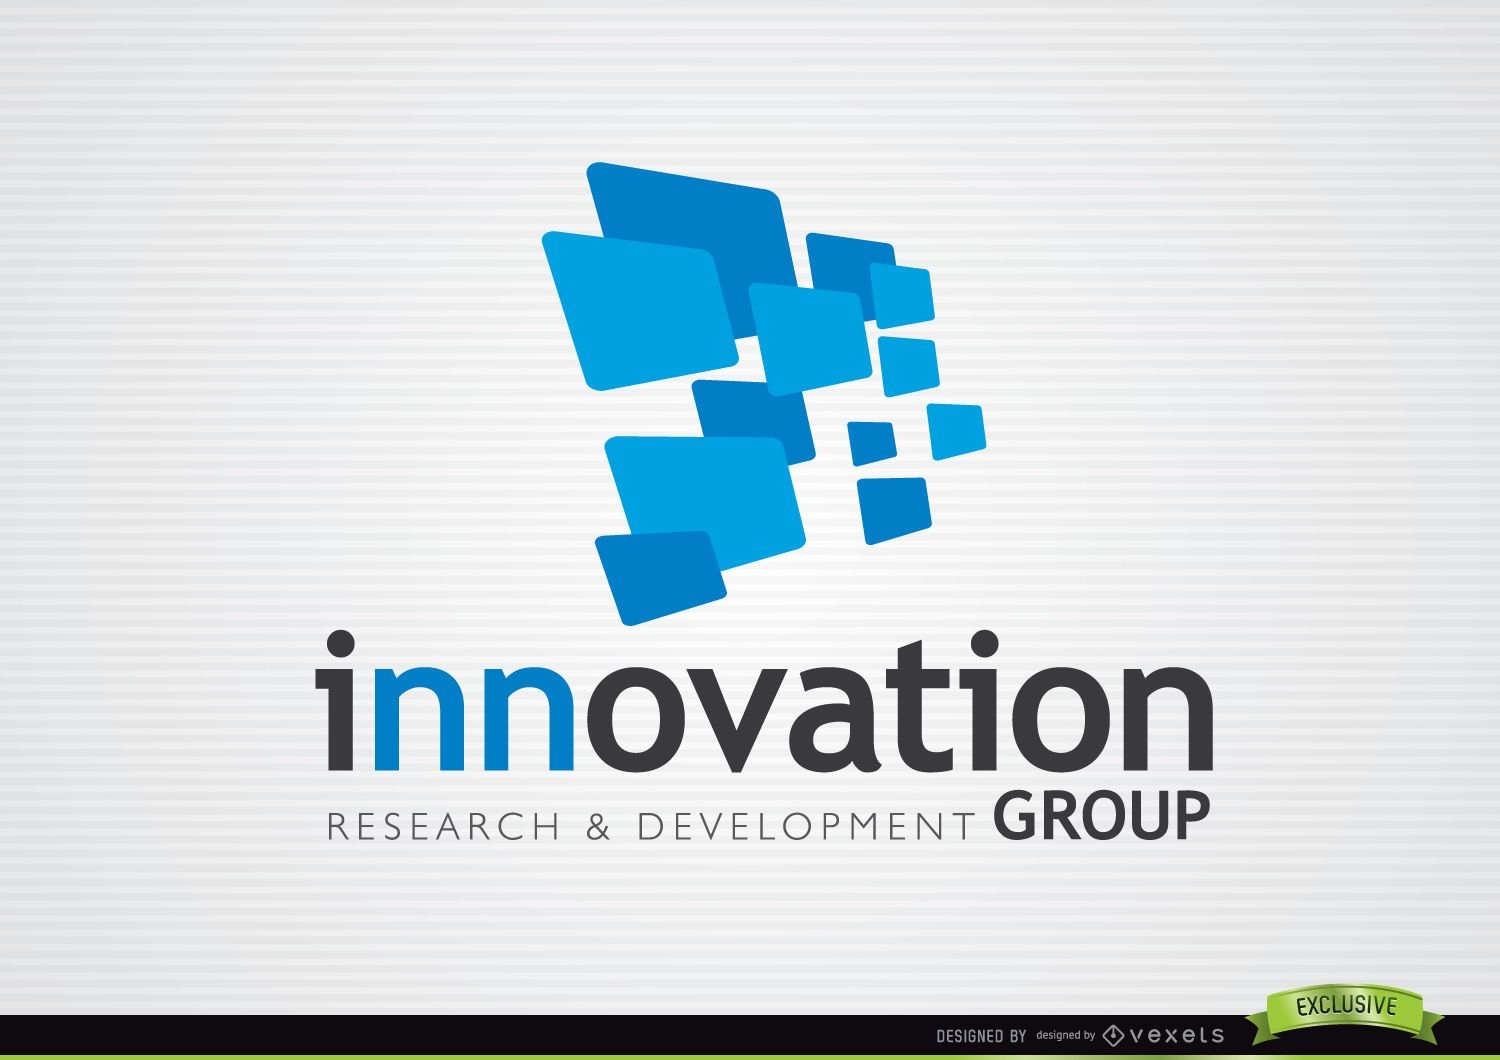 3D Blue Rectangles Innovation Logo